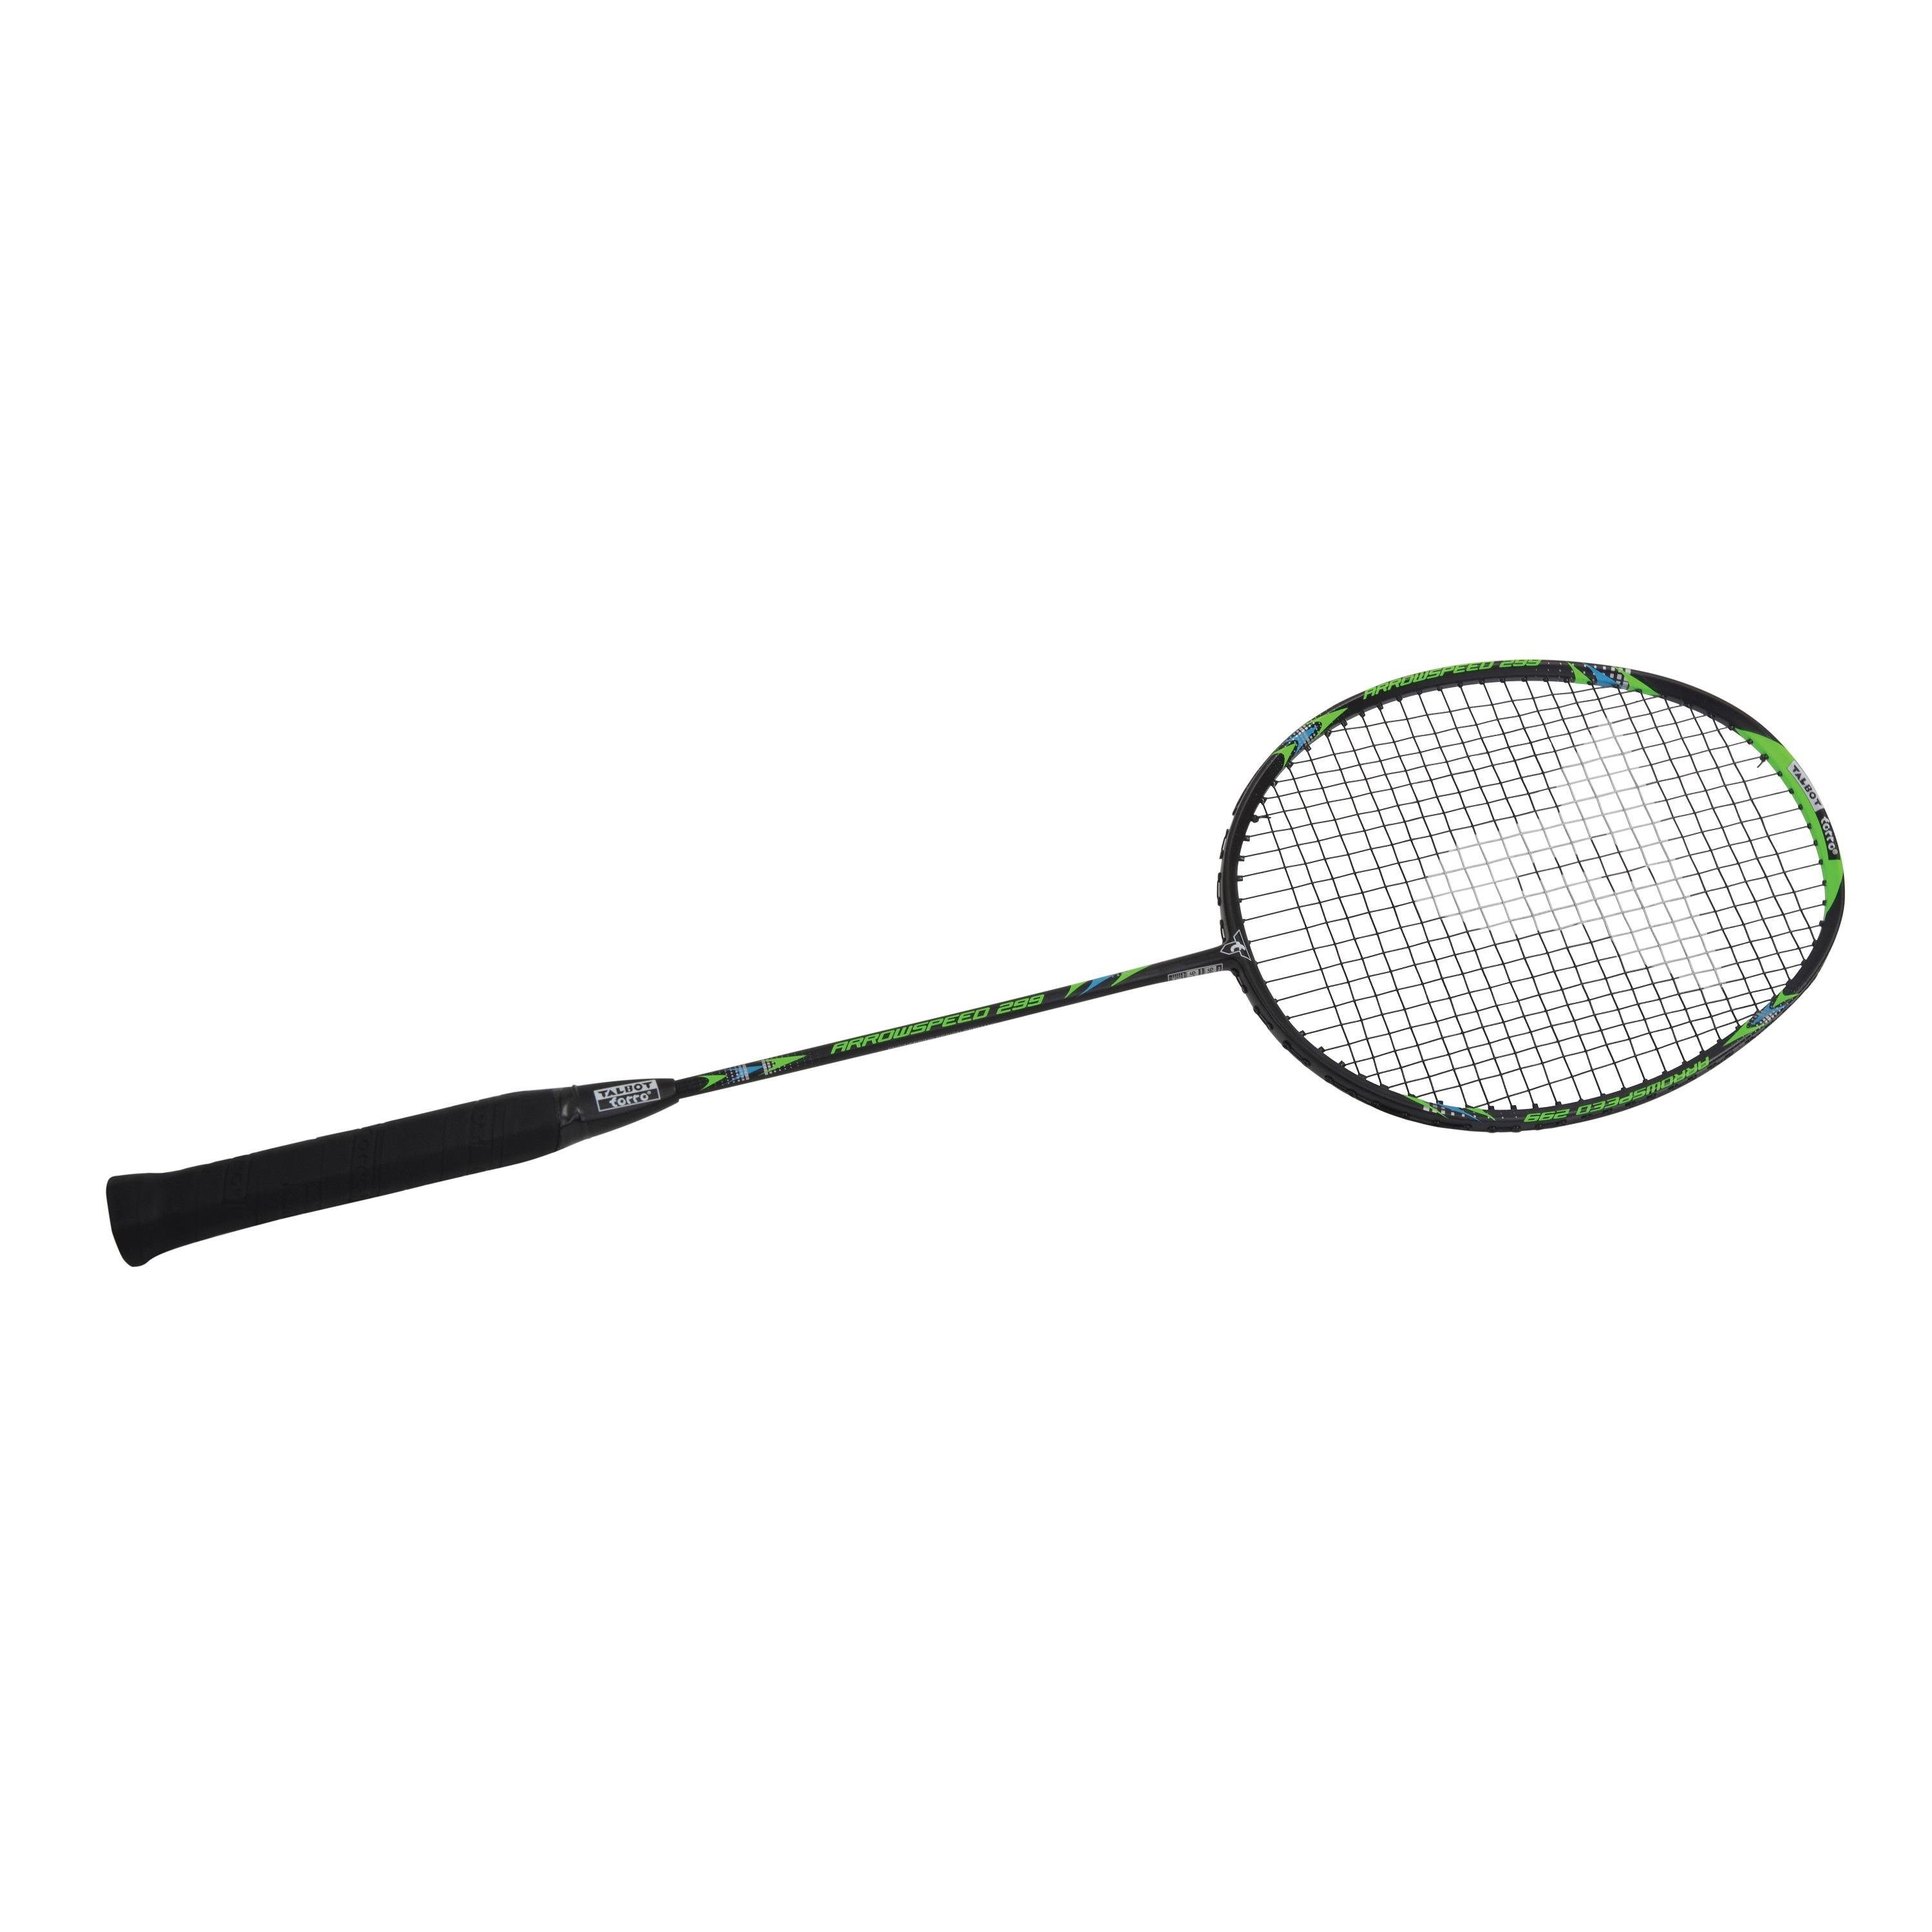 ARROWSPEED Badmintonschläger Talbot-Torro 299